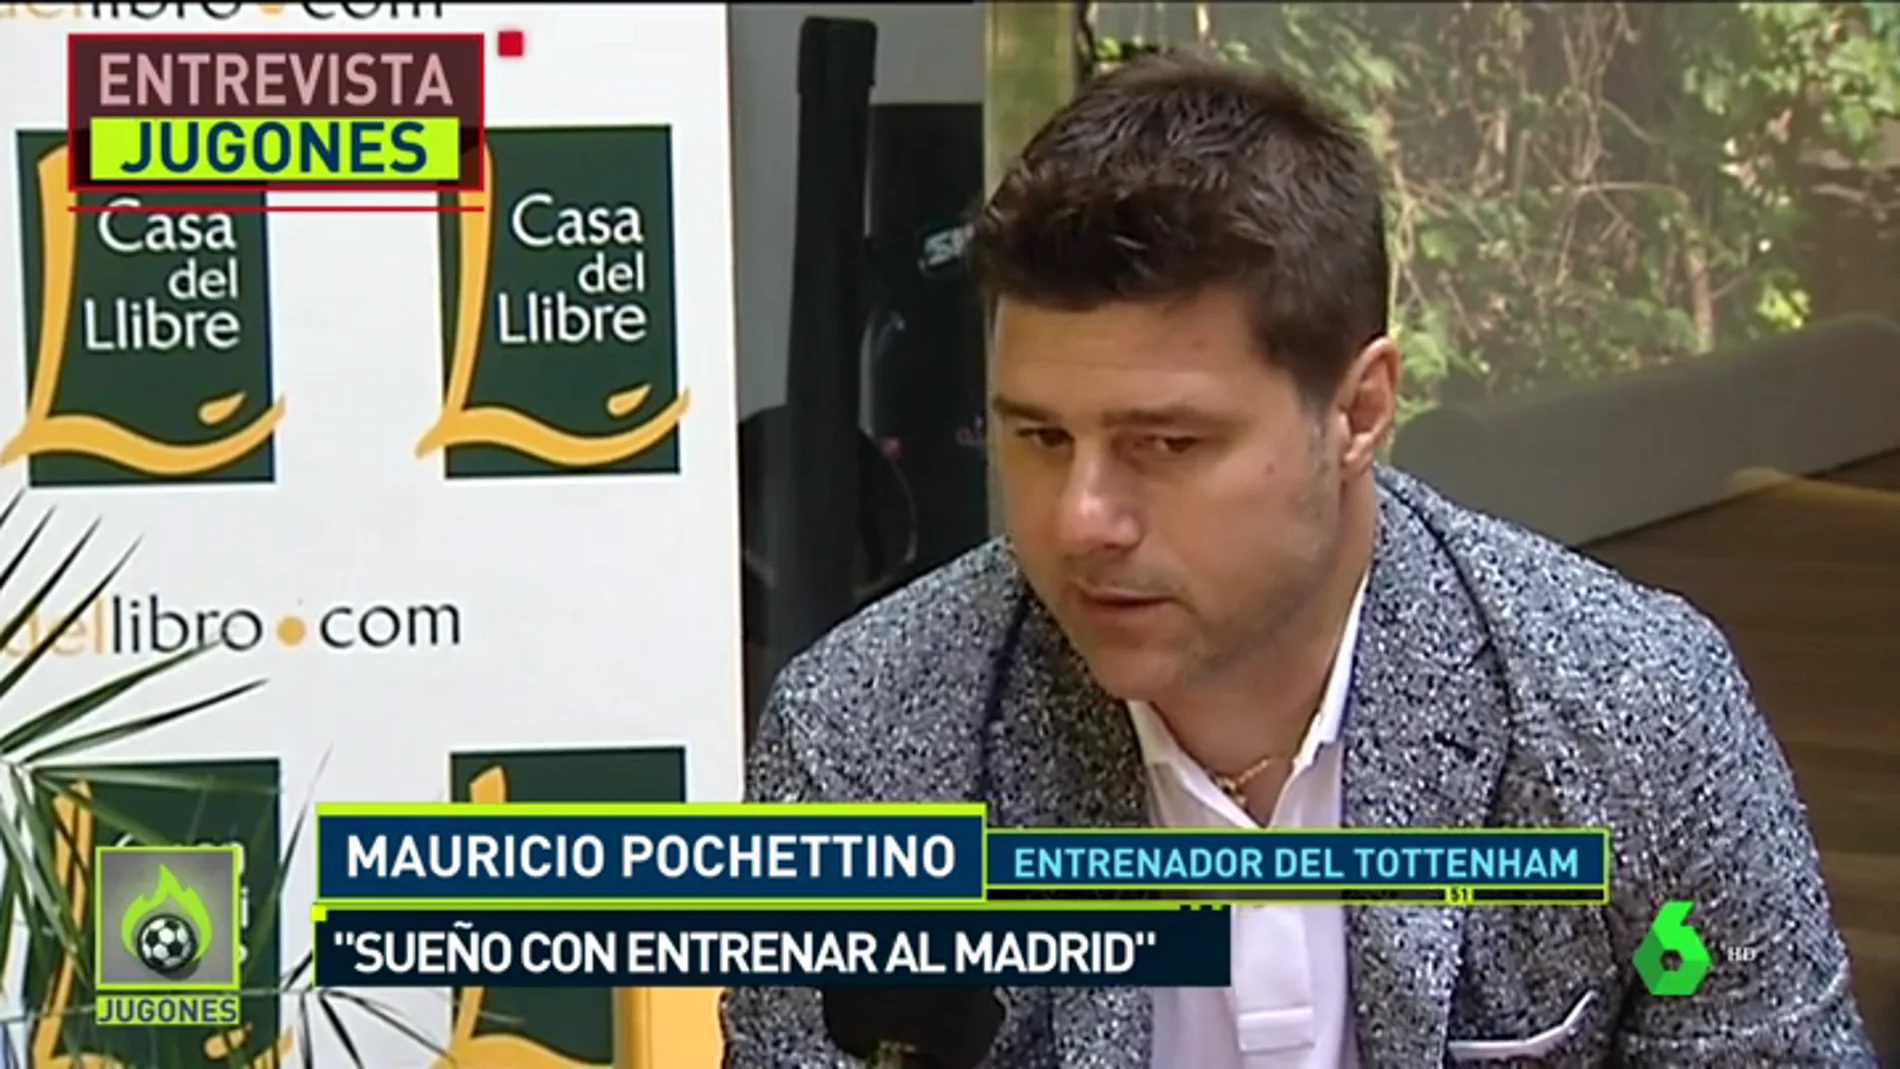 Pochettino: "Todos sueñan con entrenar al Real Madrid"